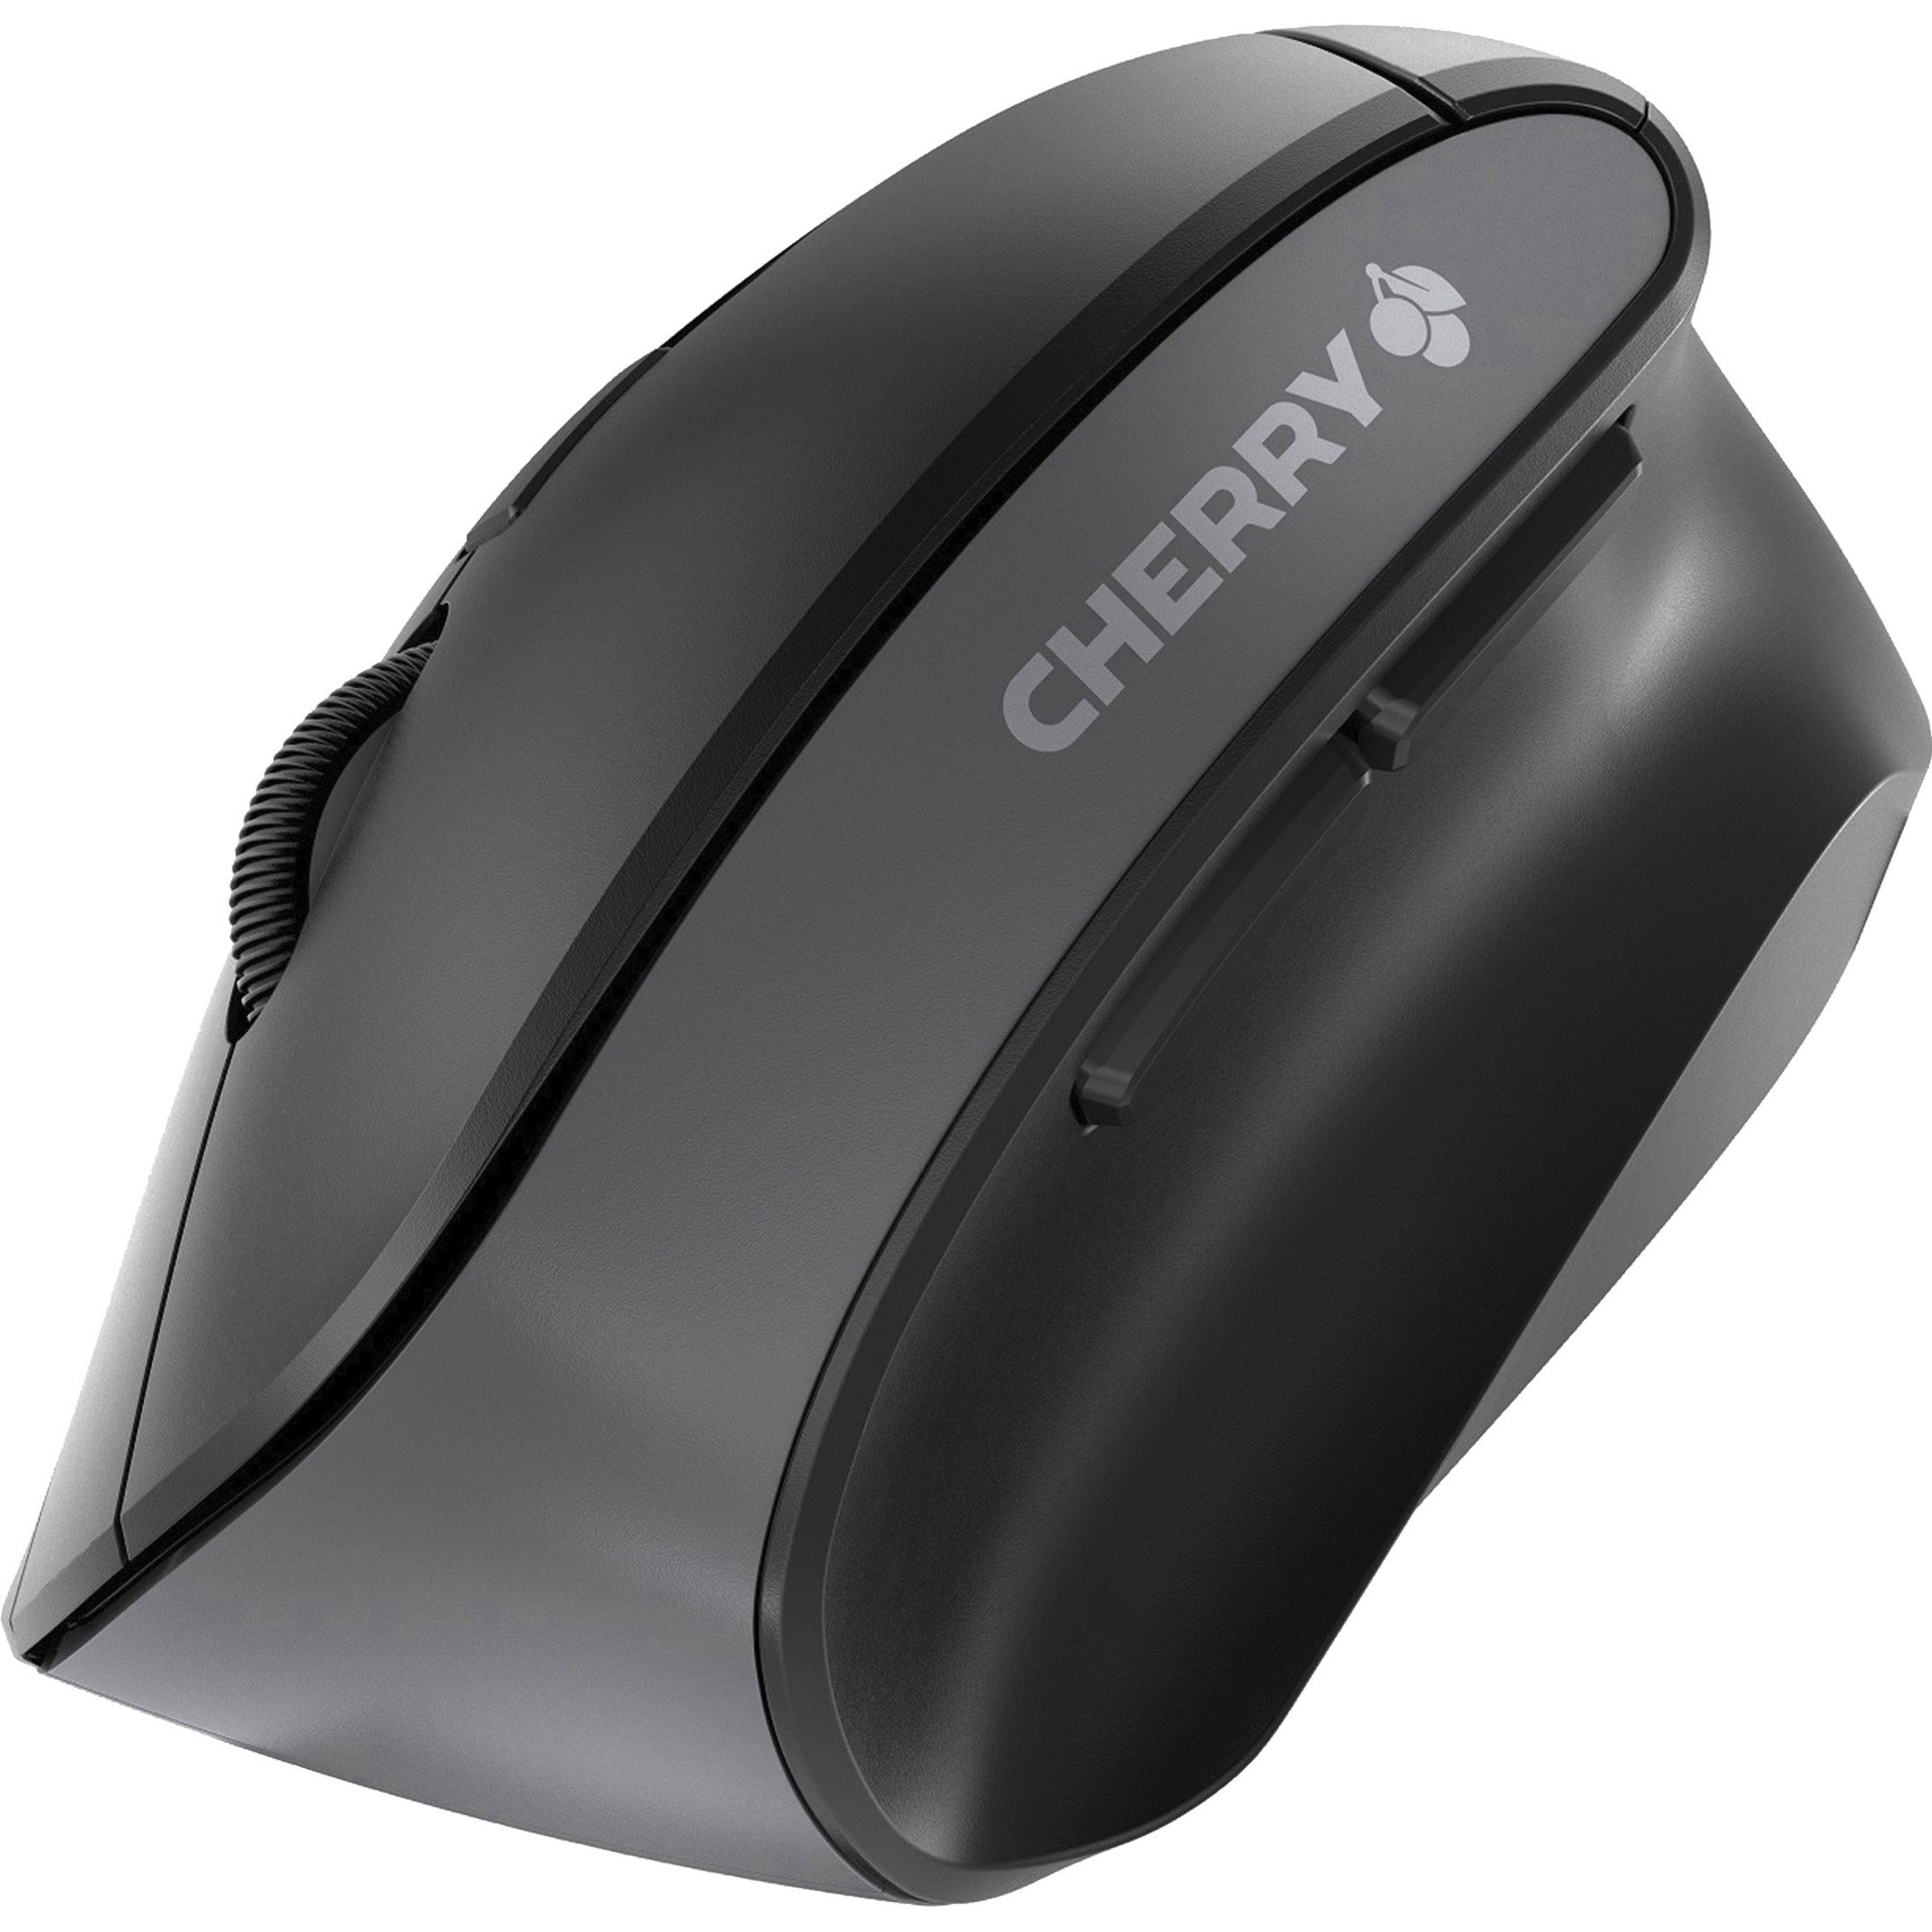 CHERRY JW-4500 MW 4500 Ergonomic Wireless Mouse, 2.4 GHz Radio Frequency, 6 Buttons, 1200 dpi